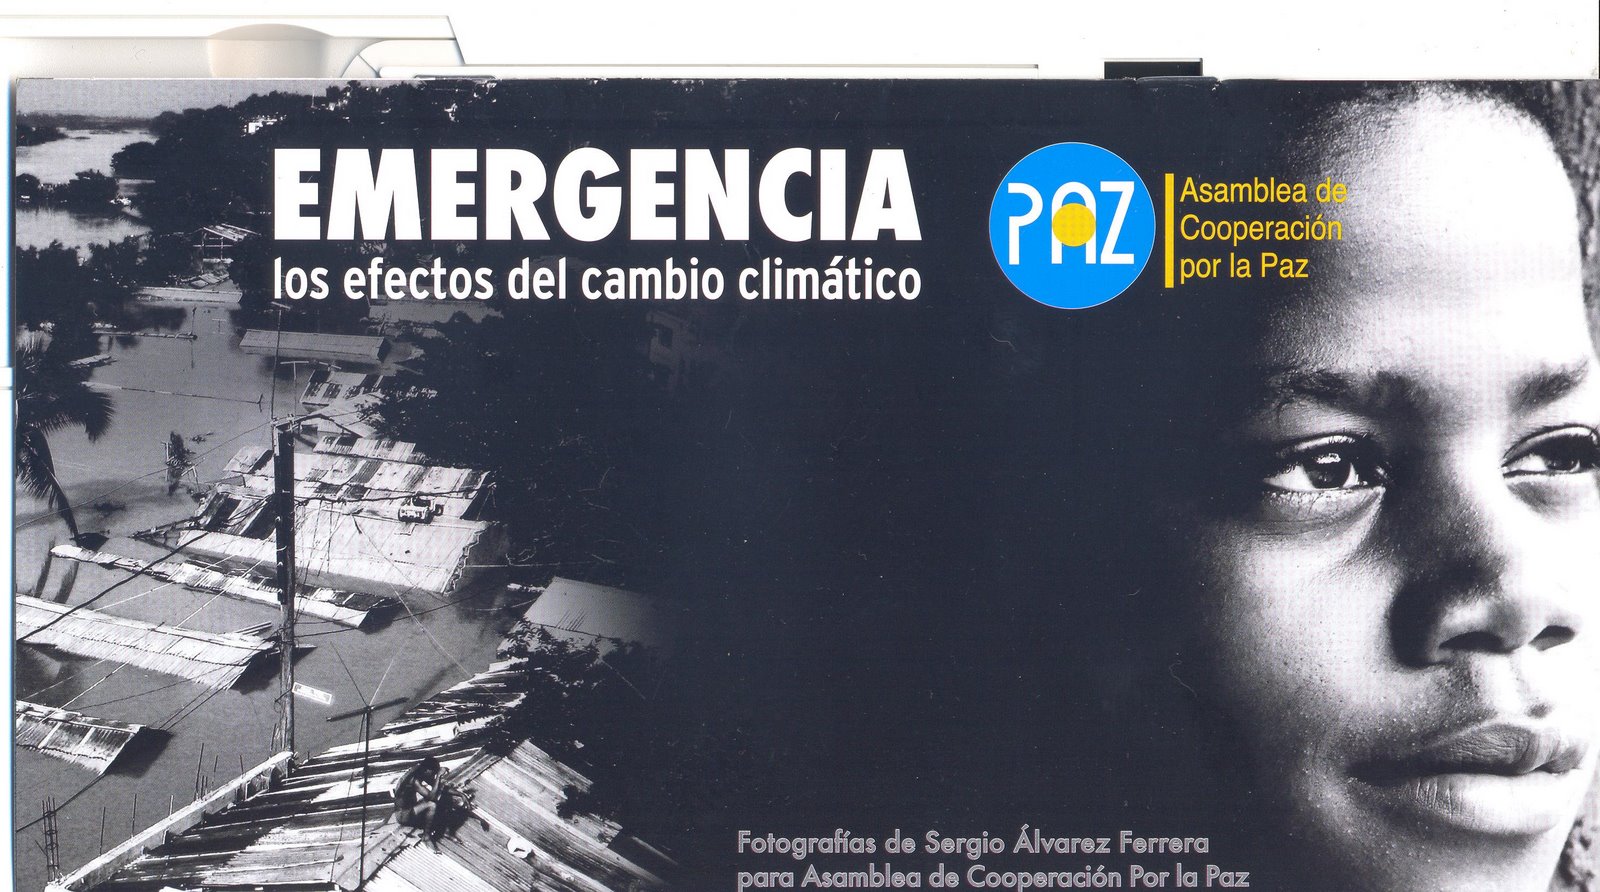 Exposicion Fotografica "Emergencia, los efectos del cambio climatico" Acpp